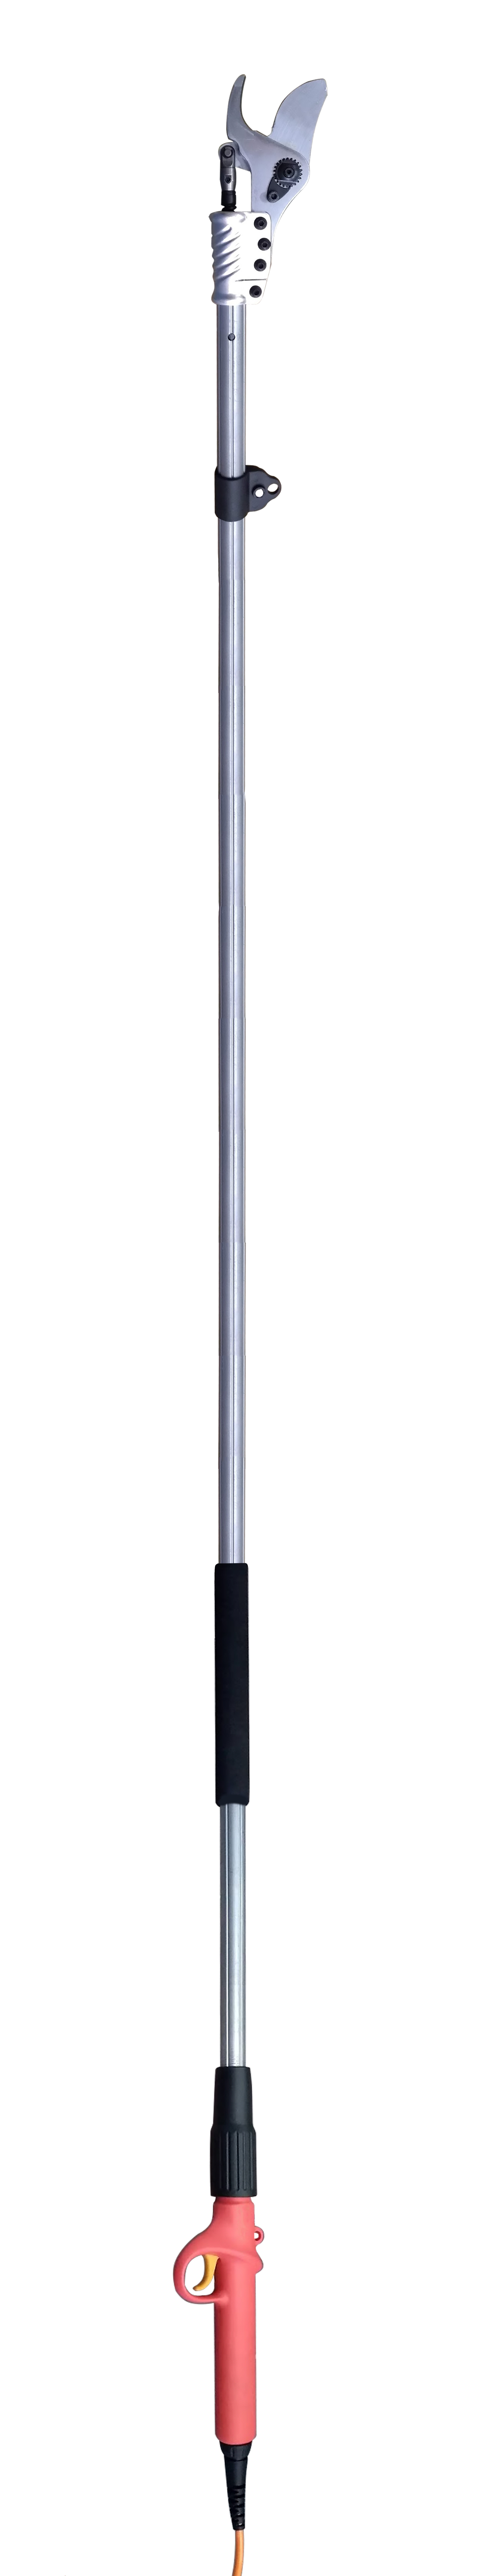 Zenport Épicateur longue portée lep858-pole pole pole only 99.5 inch long reach battery powered peler